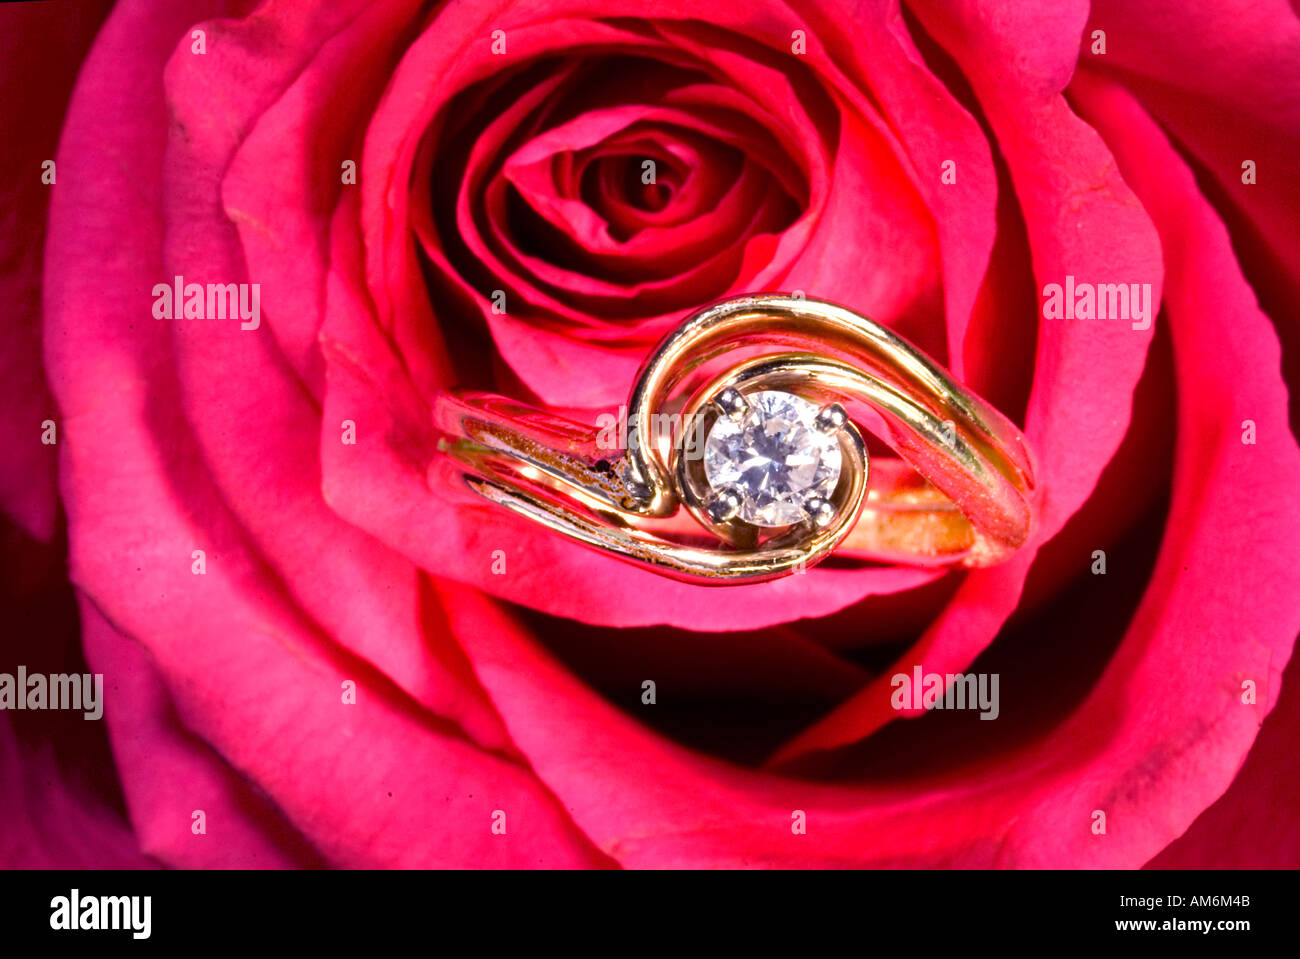 Taglio brillante anello diamante incastonato tra i petali di rosa rossa close up Foto Stock